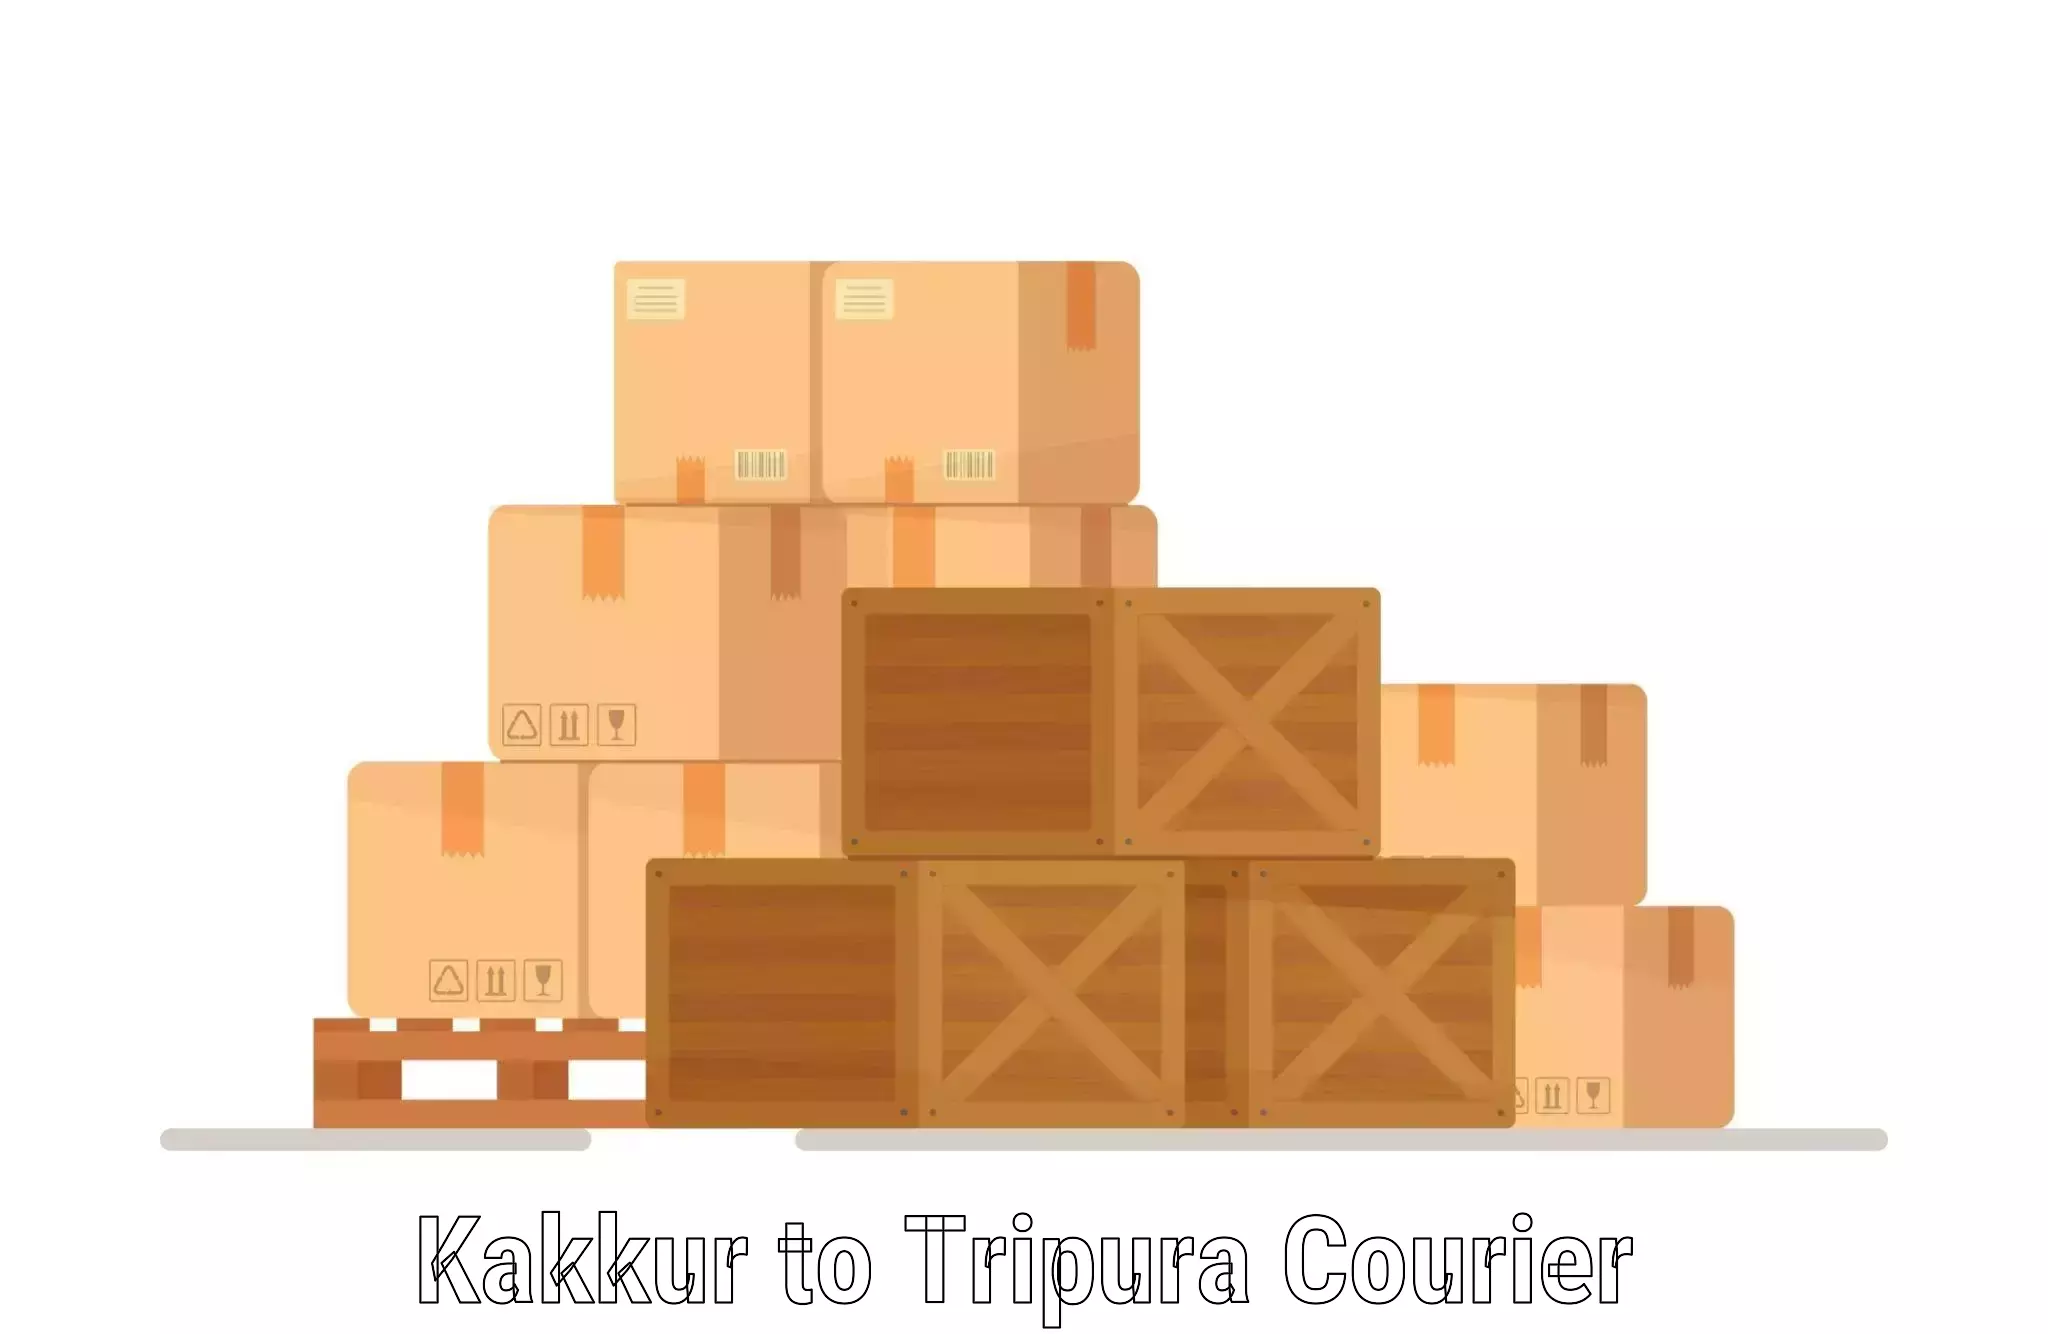 Smart courier technologies Kakkur to Agartala